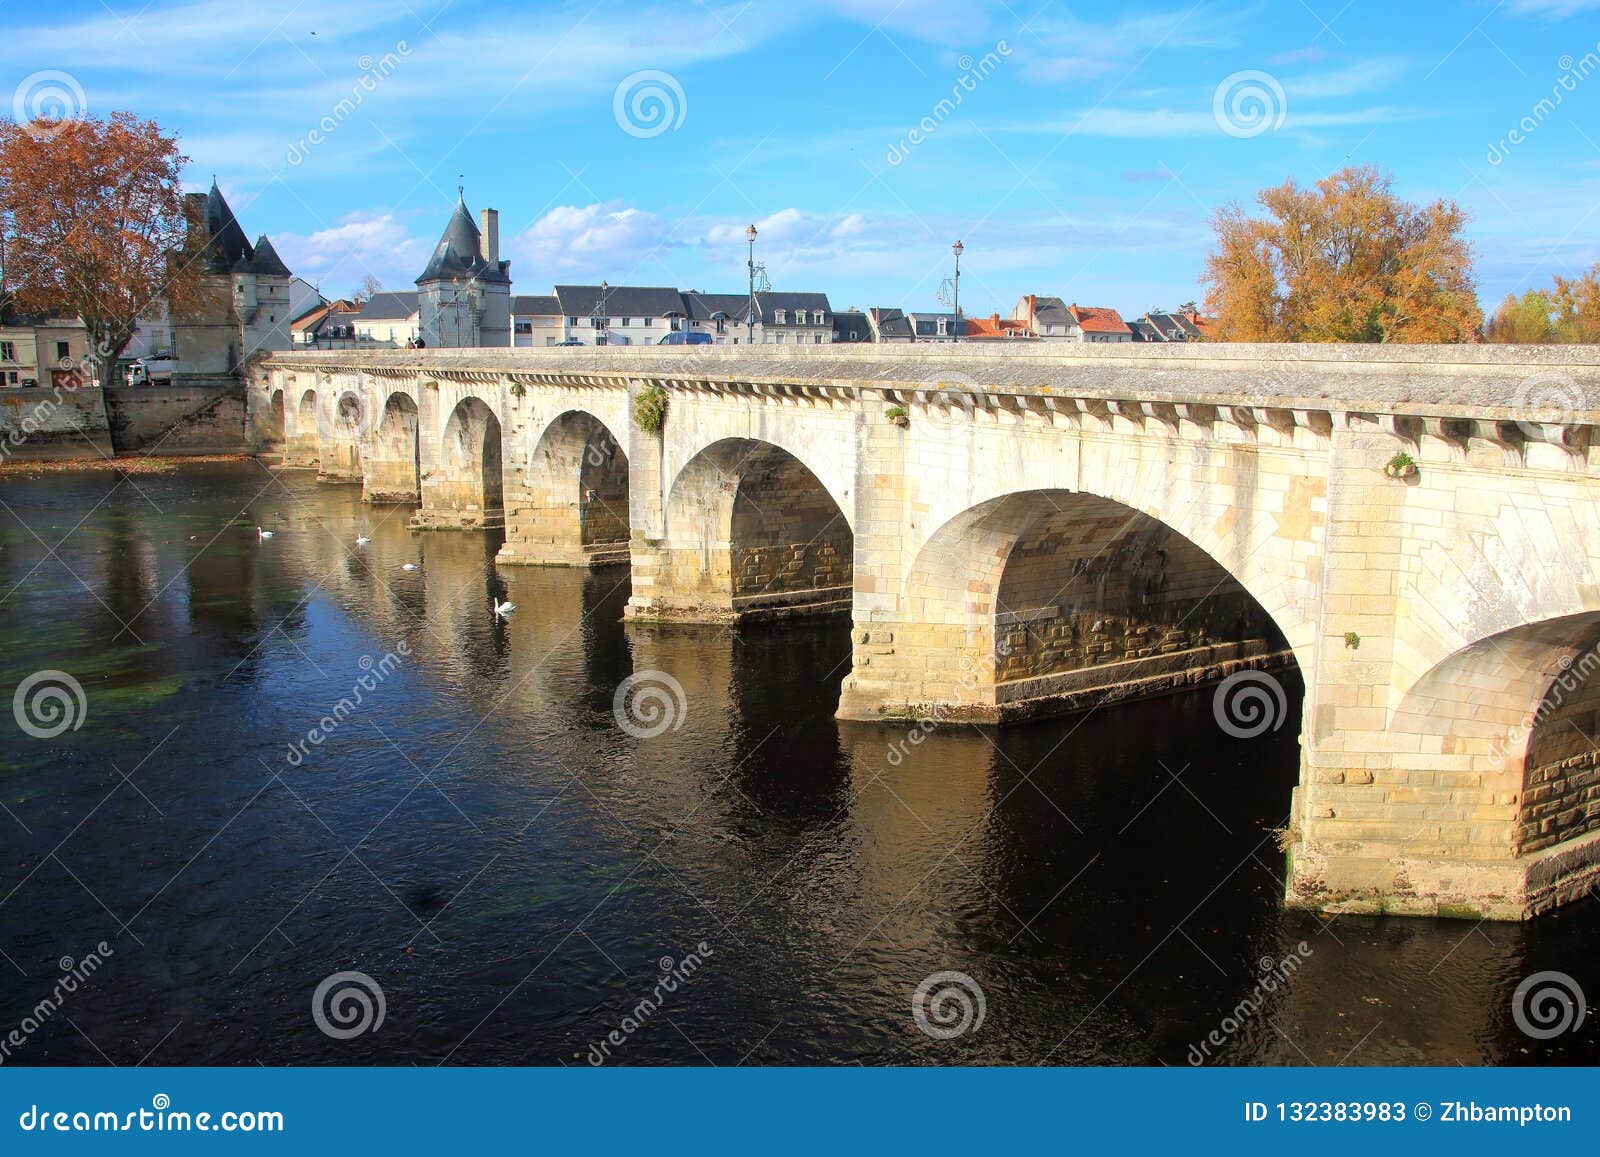 Puente A Traves Del Rio Vienne En Chatellerault En El Valle Del Loira Imagen De Archivo Imagen De Puente Construido